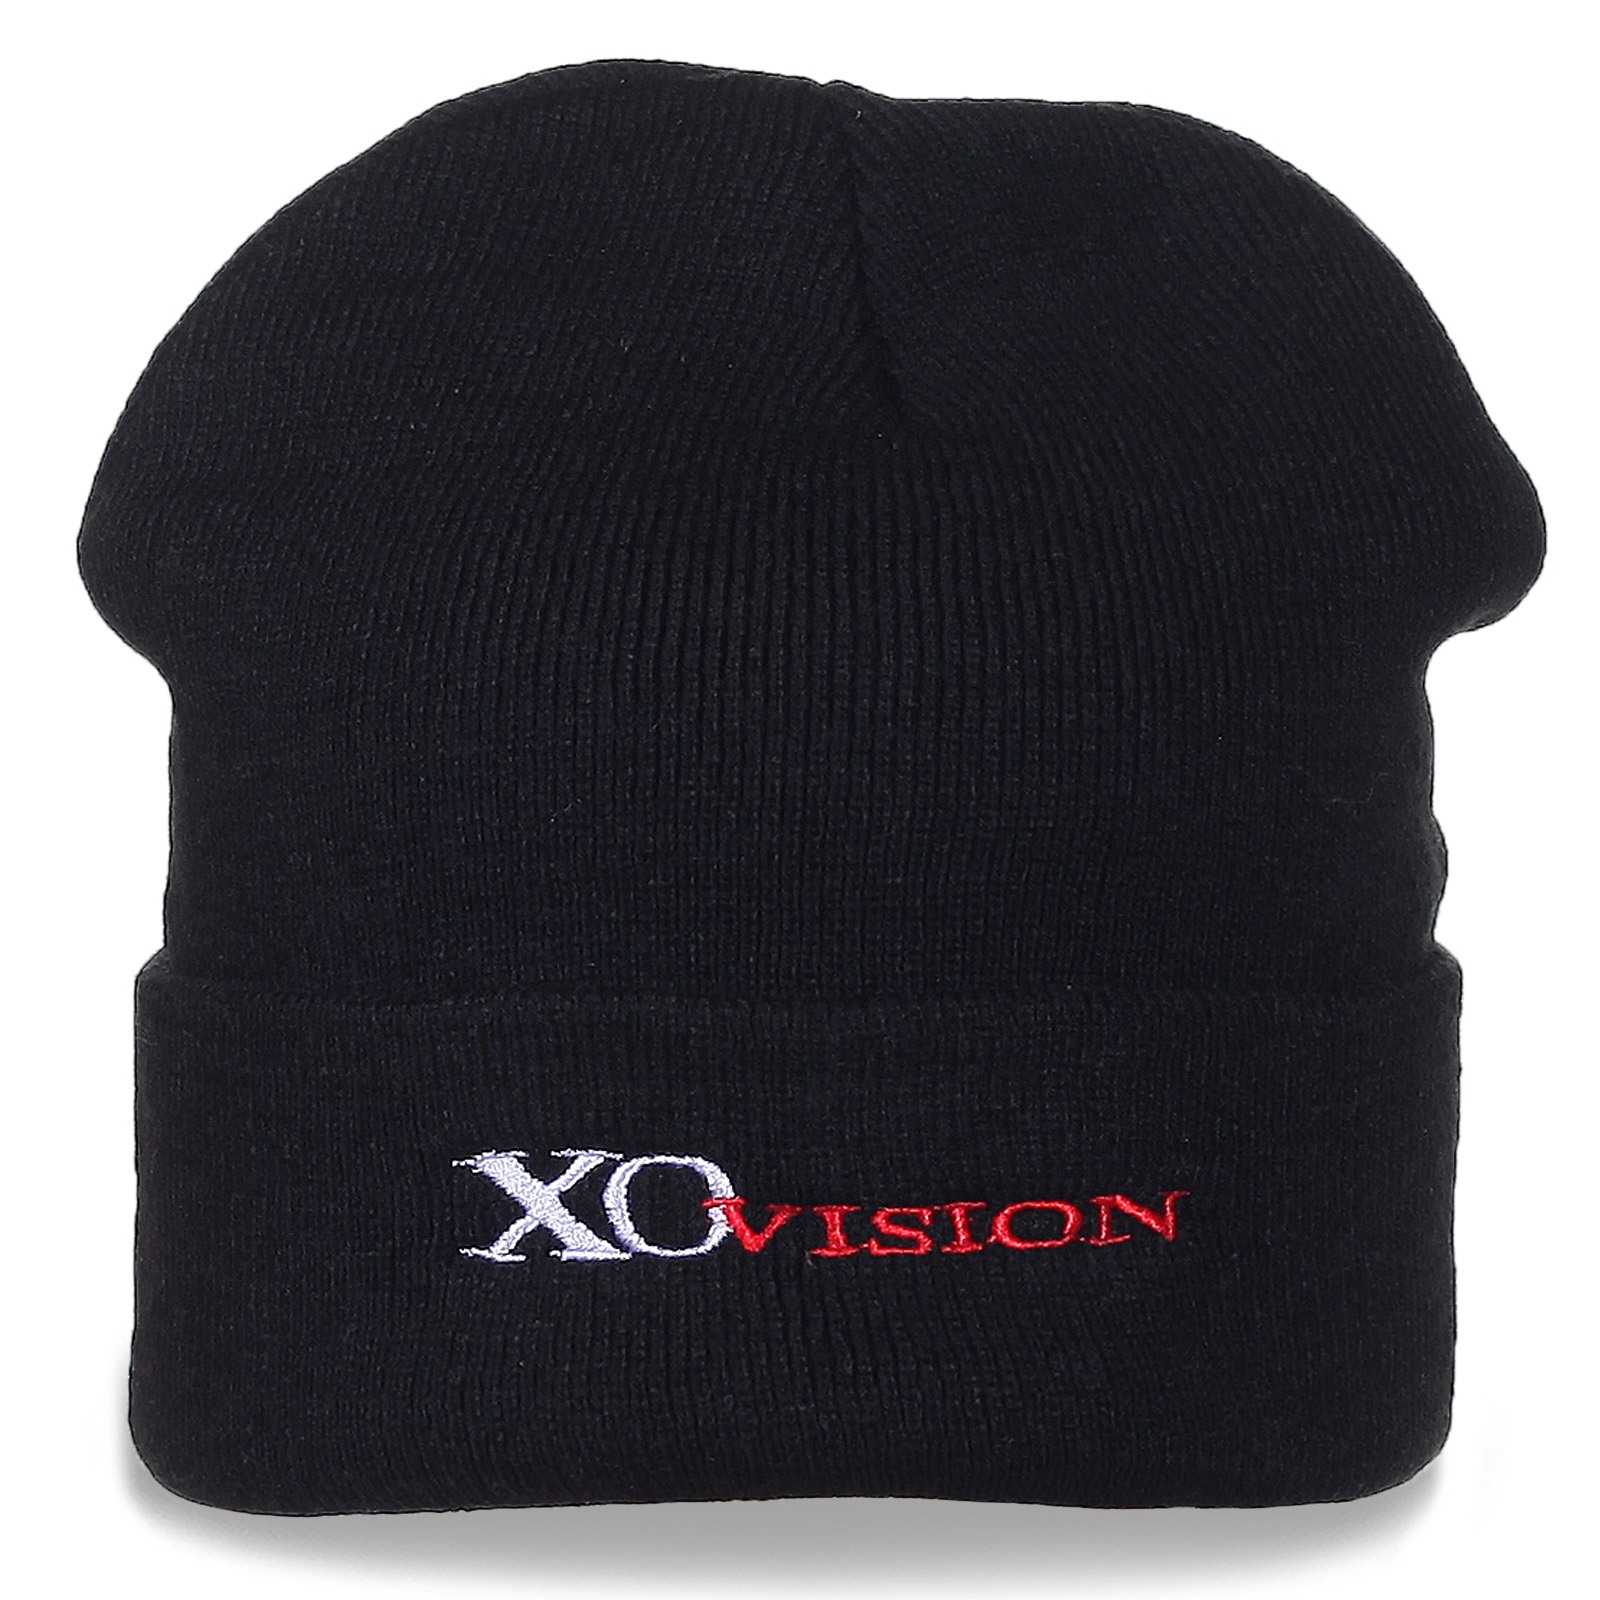 Недорогие мужские шапки XO Vision с доставкой